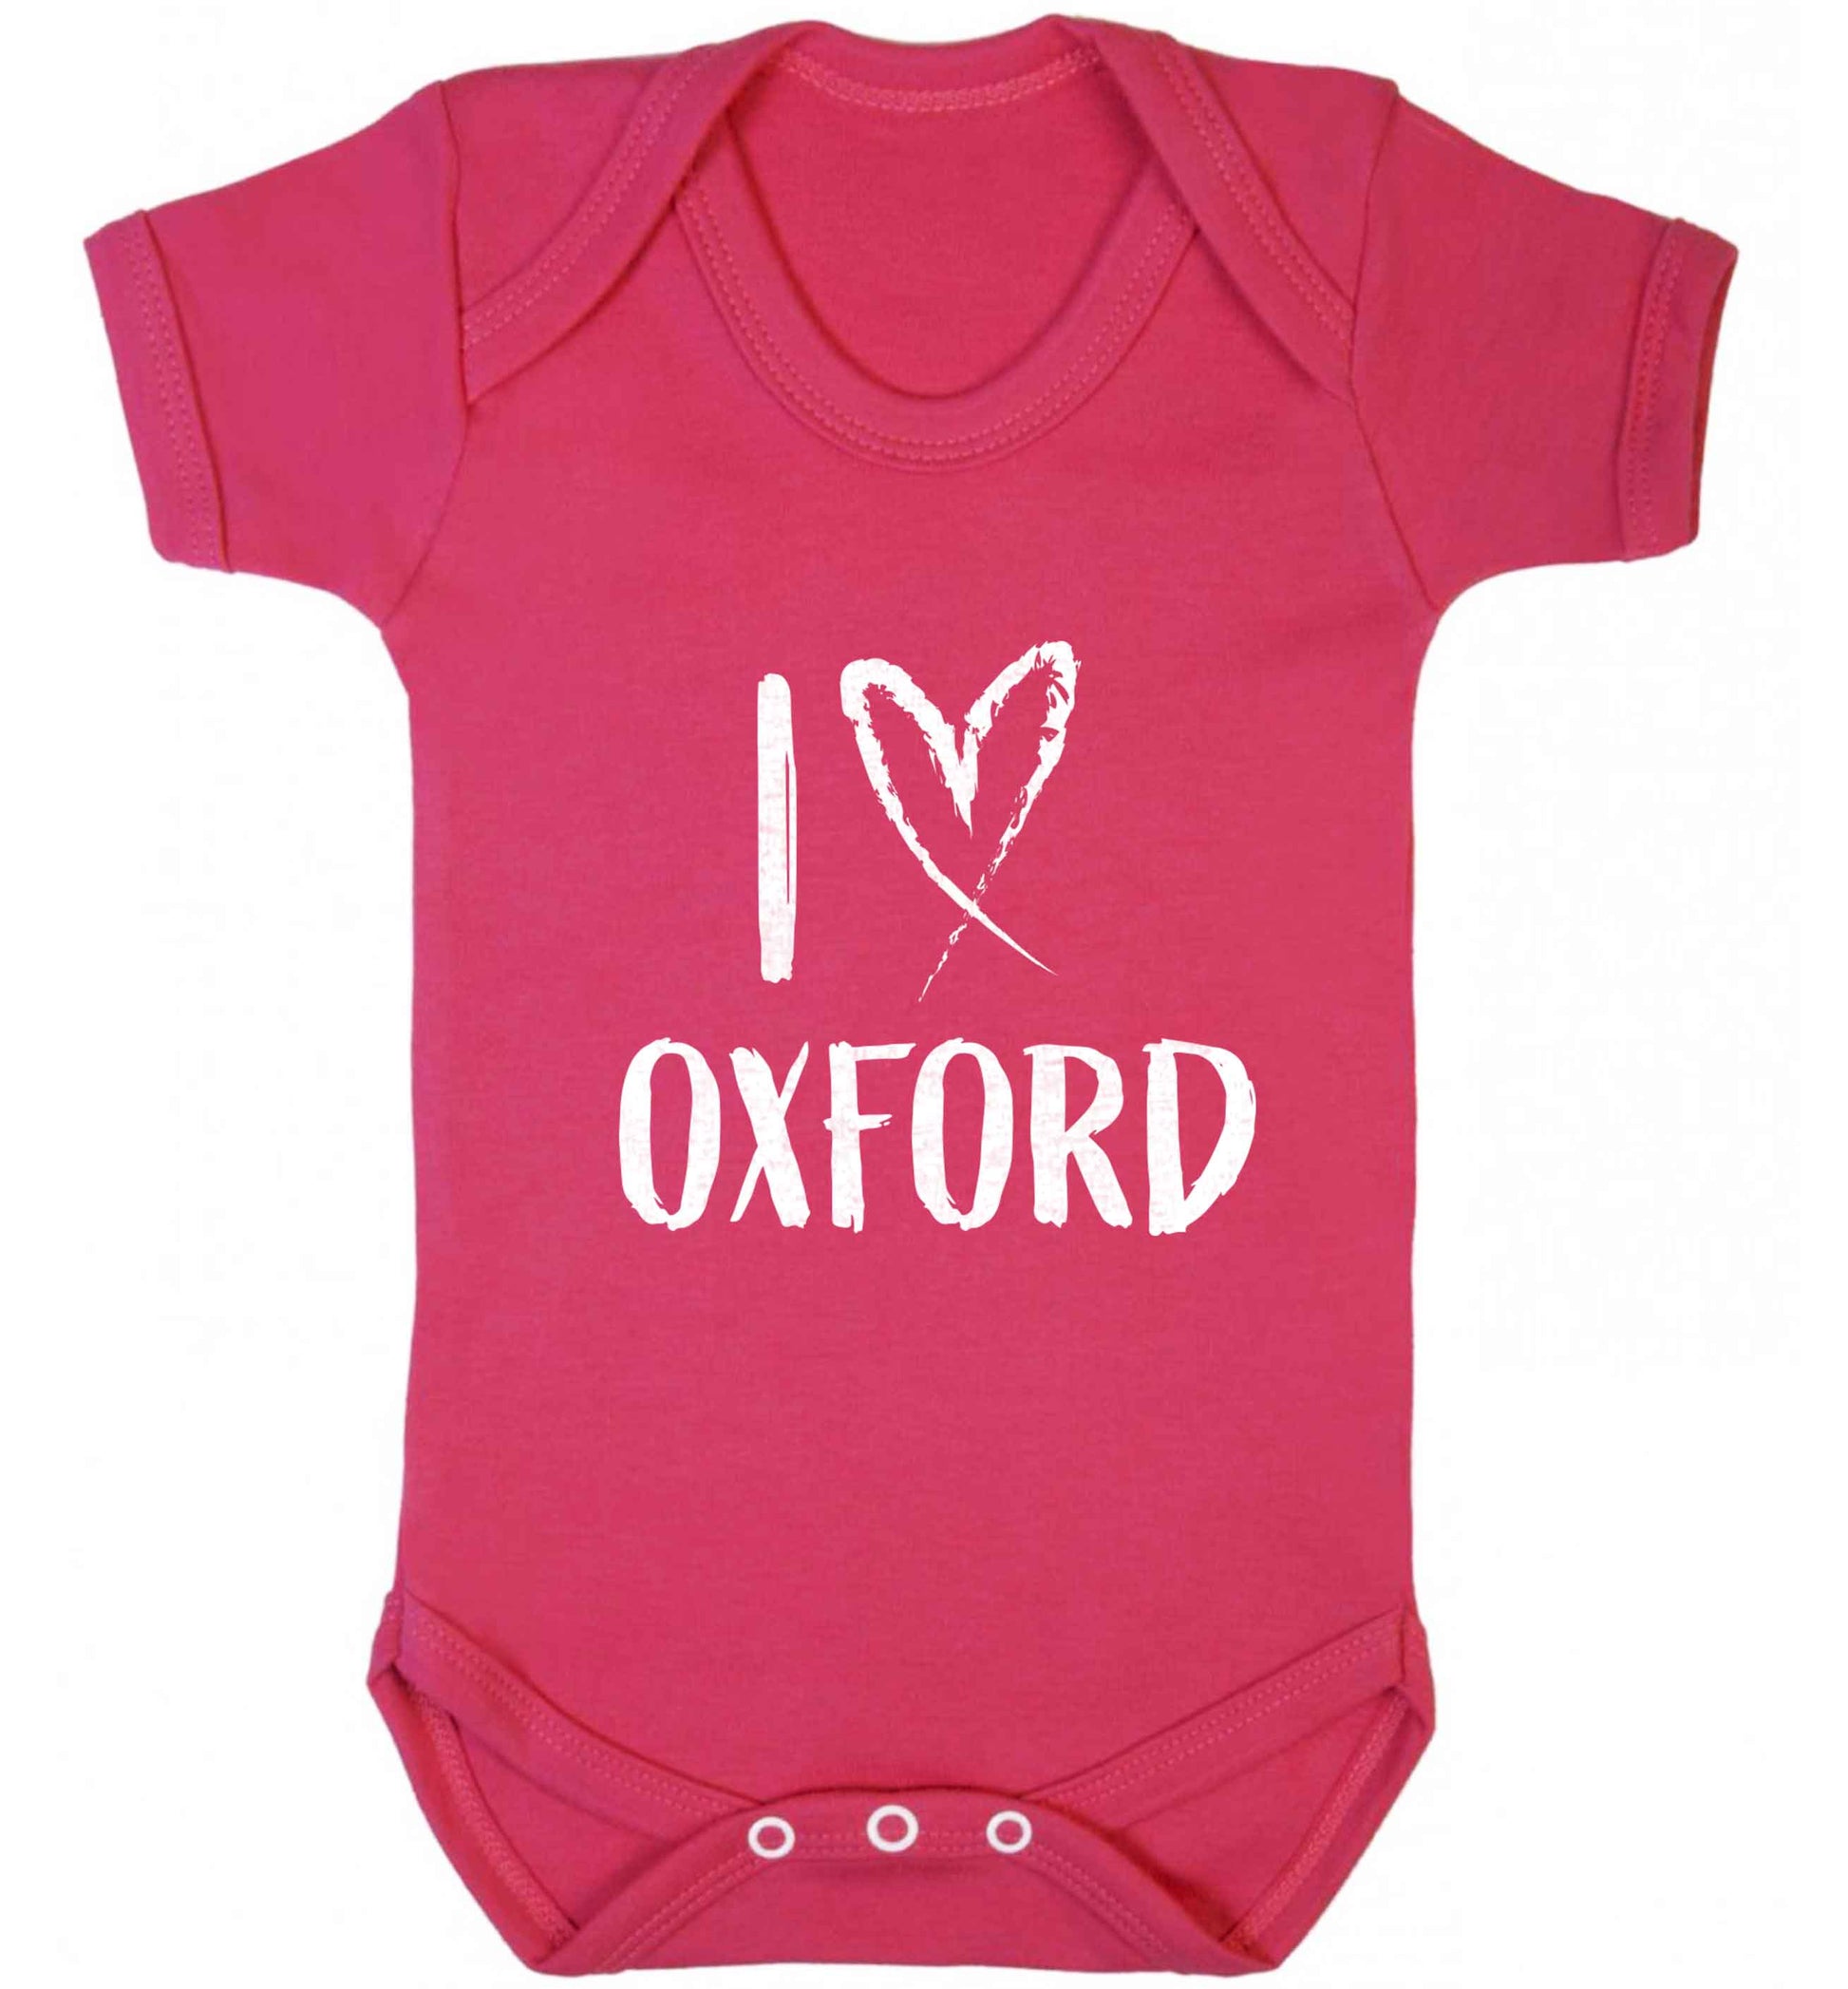 I love Oxford baby vest dark pink 18-24 months